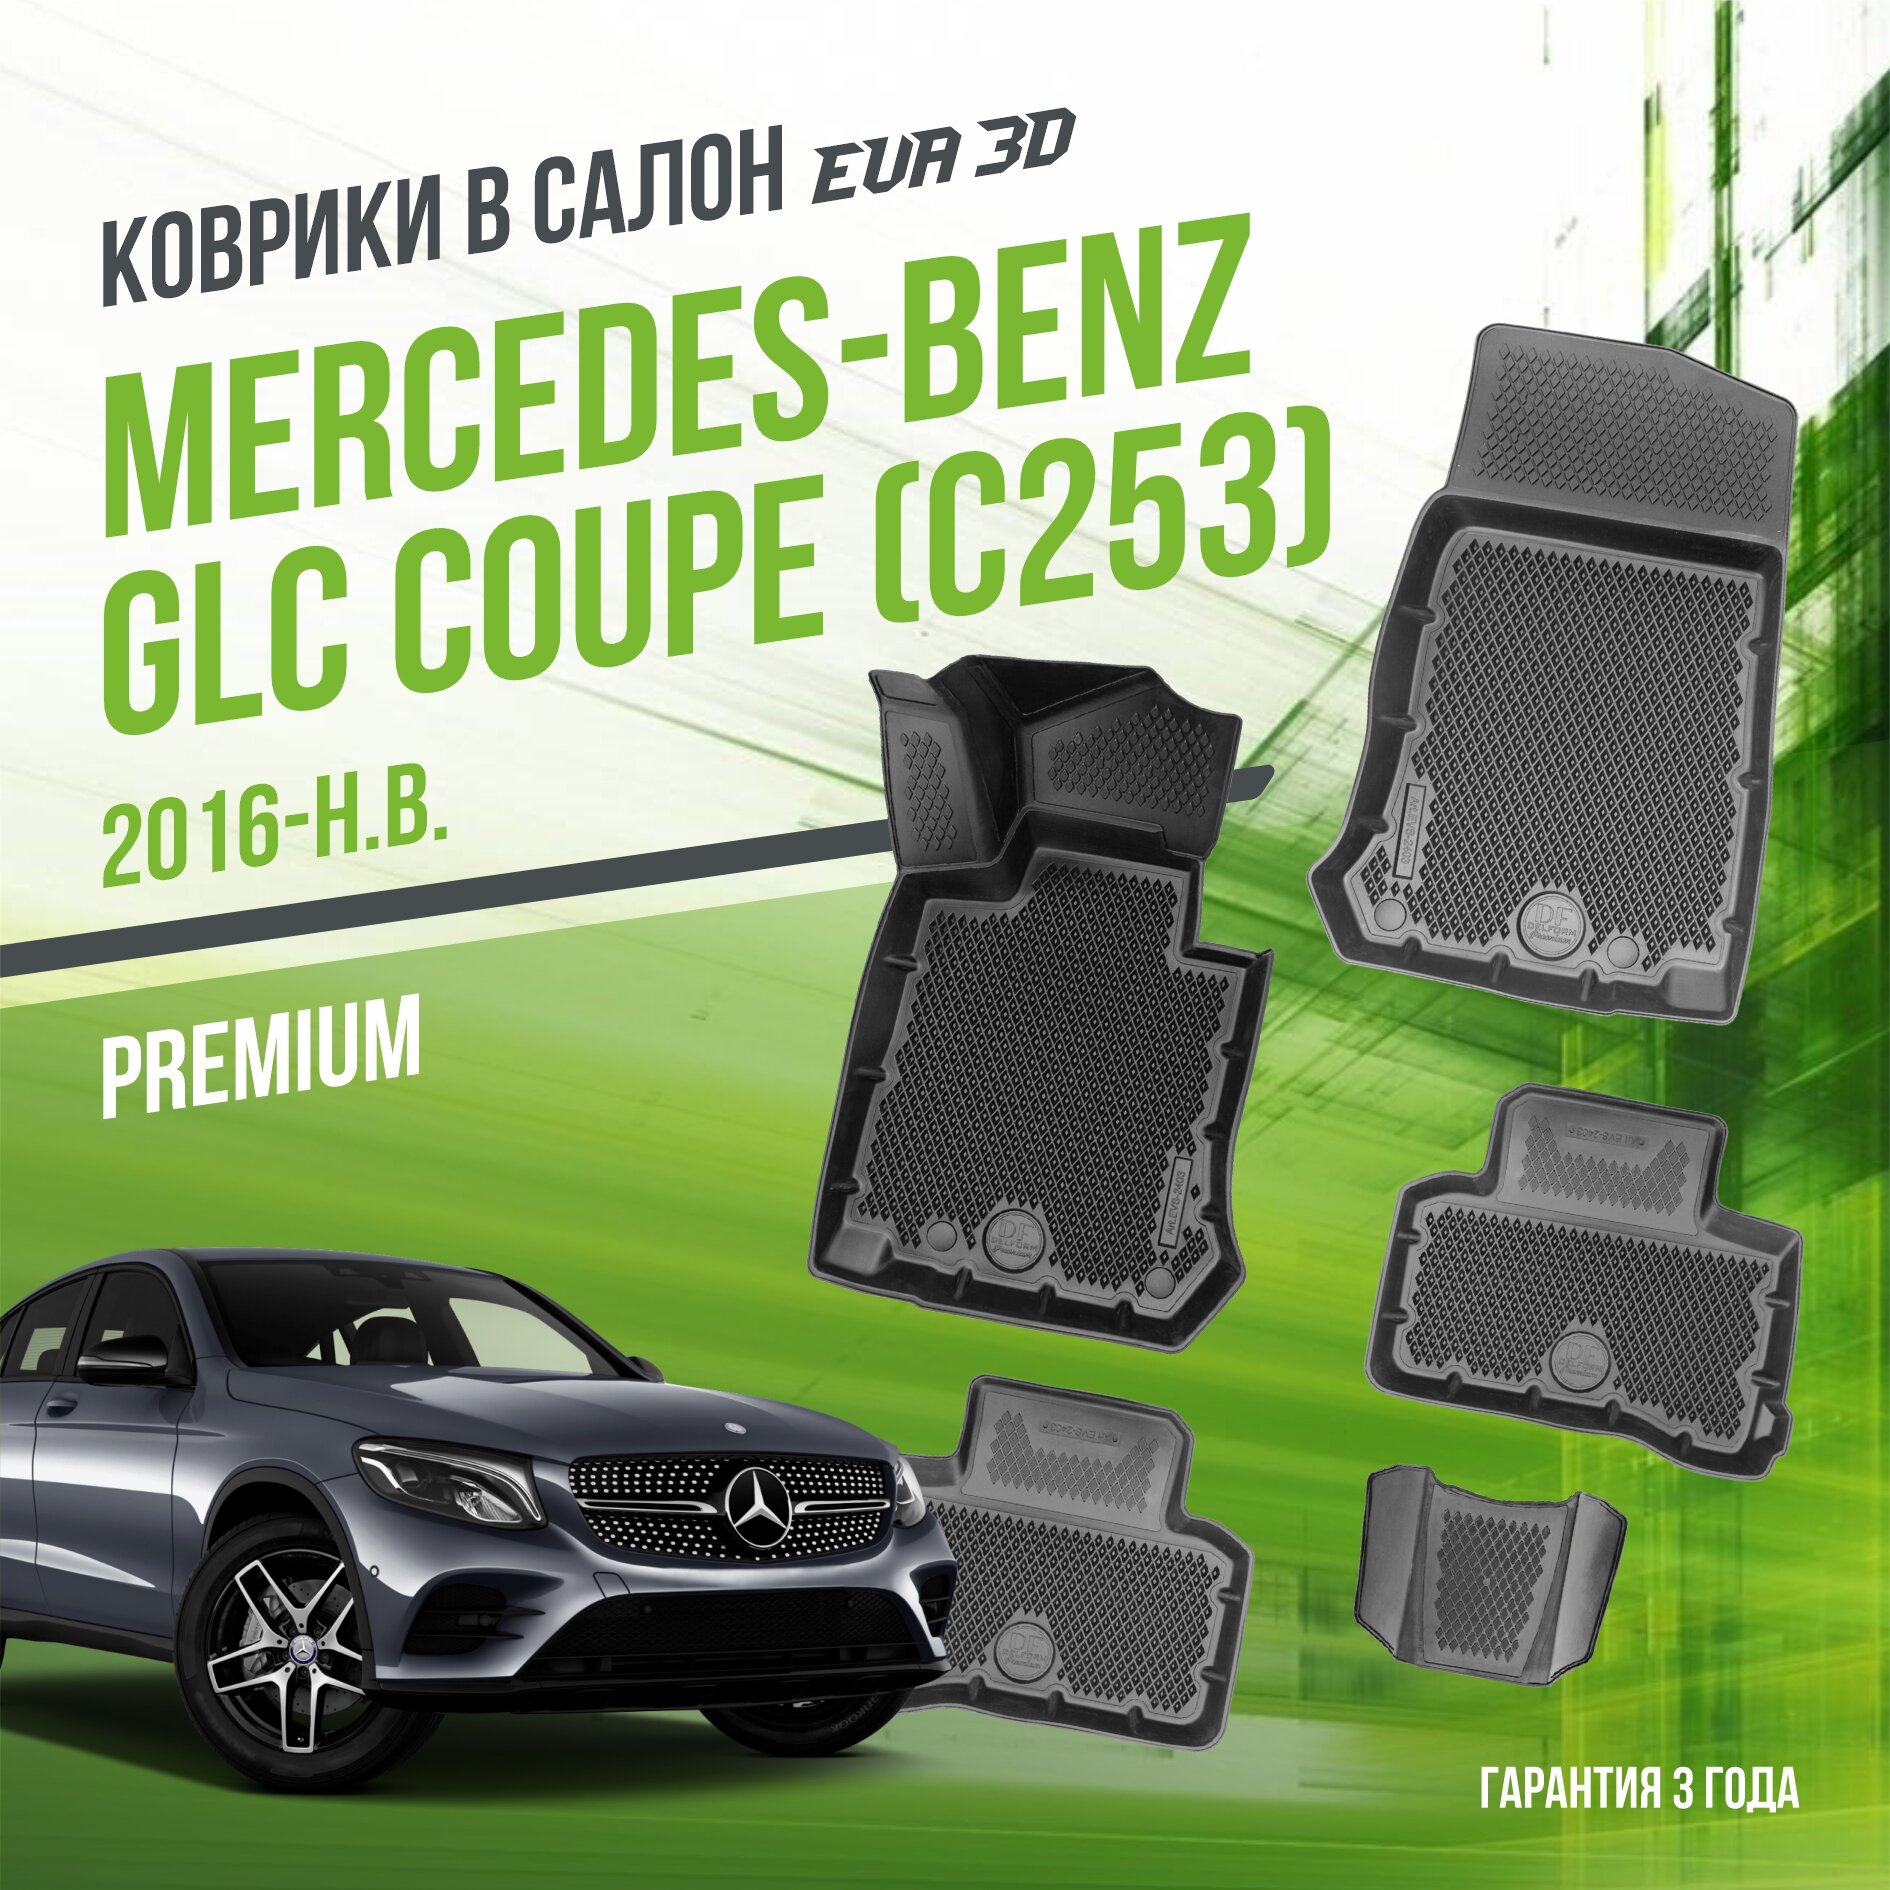 Коврики в салон Mersedes-Benz GLC Coupe "C253" (2016-н. в.) / Мерседес ГЛС Купе / набор "Premium" ковров DelForm с бортами и ячейками EVA 3D / ЭВА 3Д